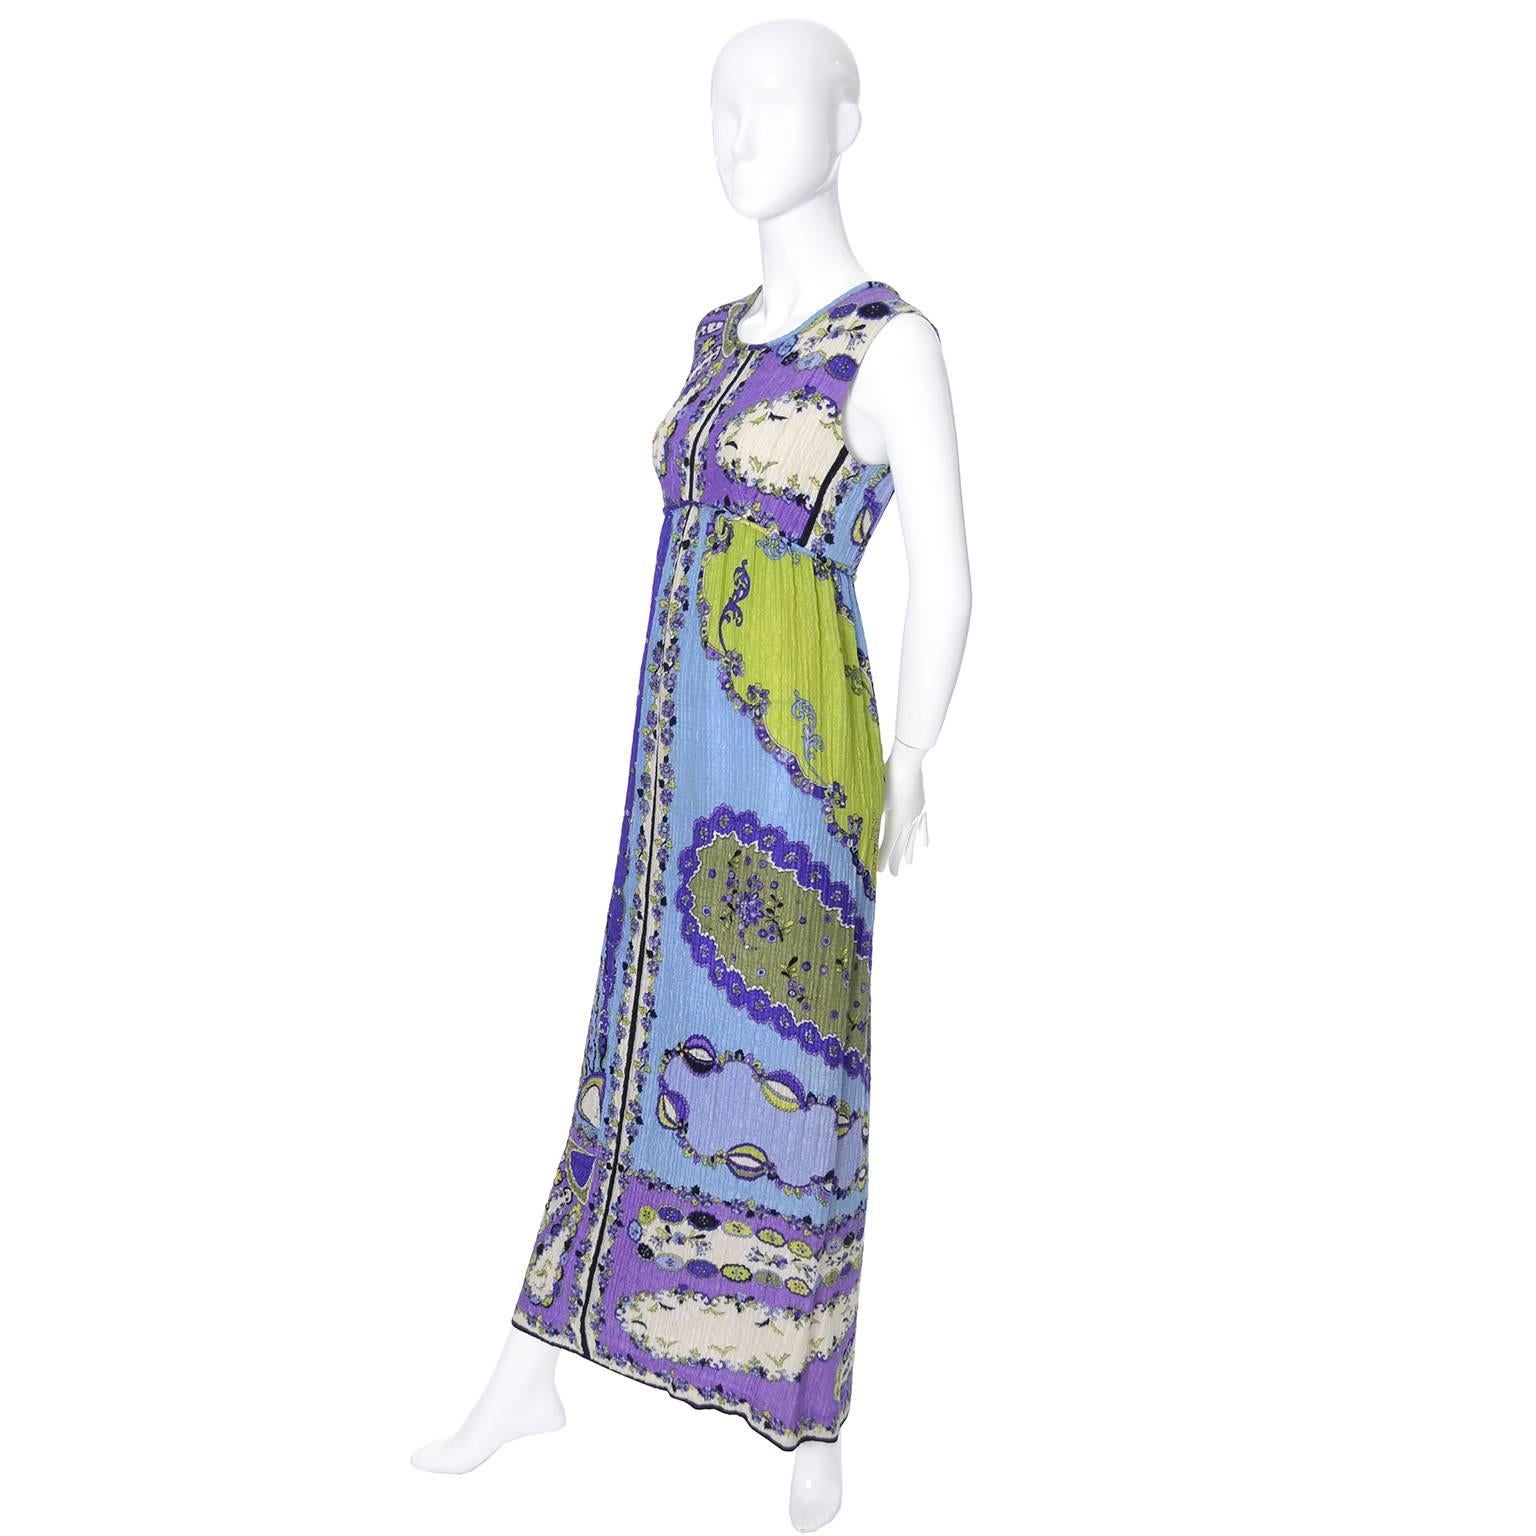 1960er Jahre Vintage Emilio Pucci Kleid aus Seide mit Knitterkragen, charakteristischer Pop-Art-Mod-Stoff 1